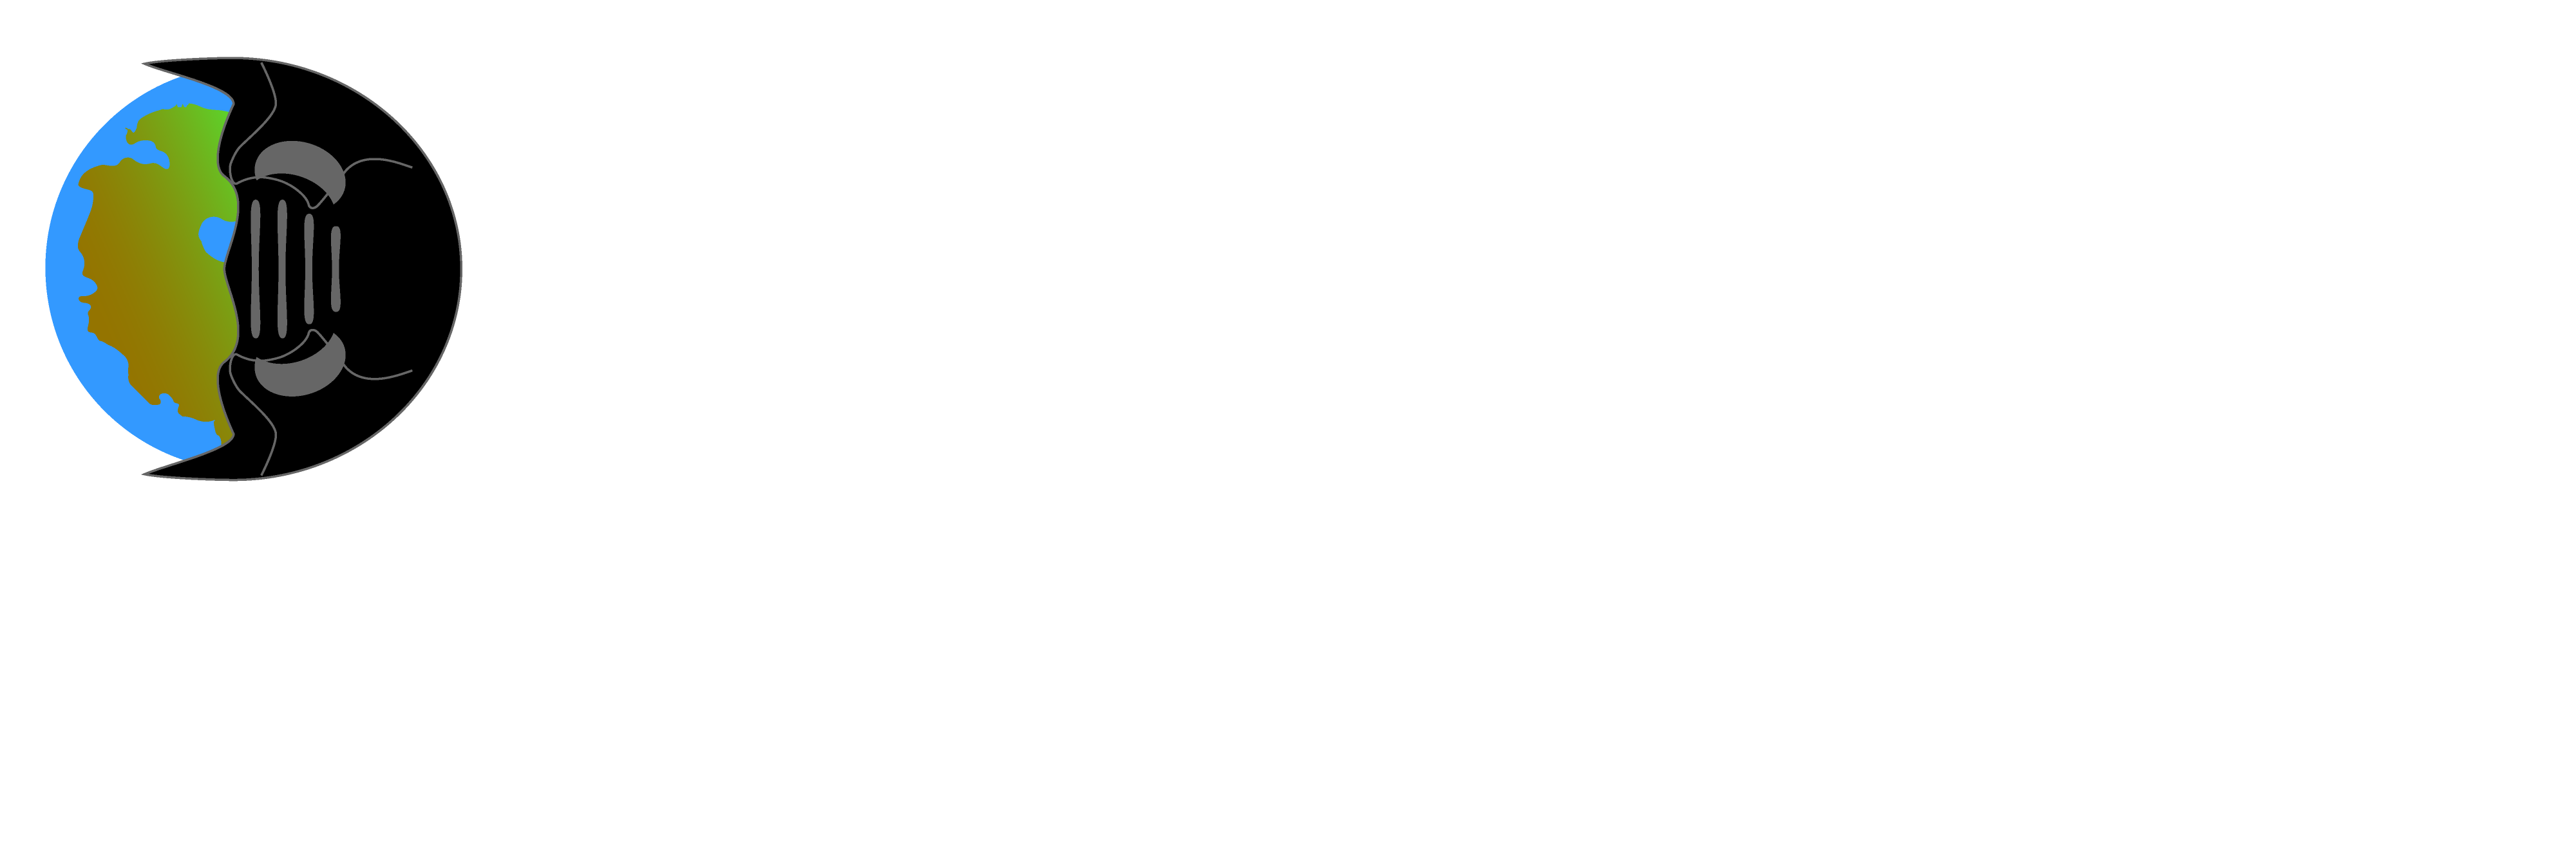 Digital Atlas of Ancient Life logo